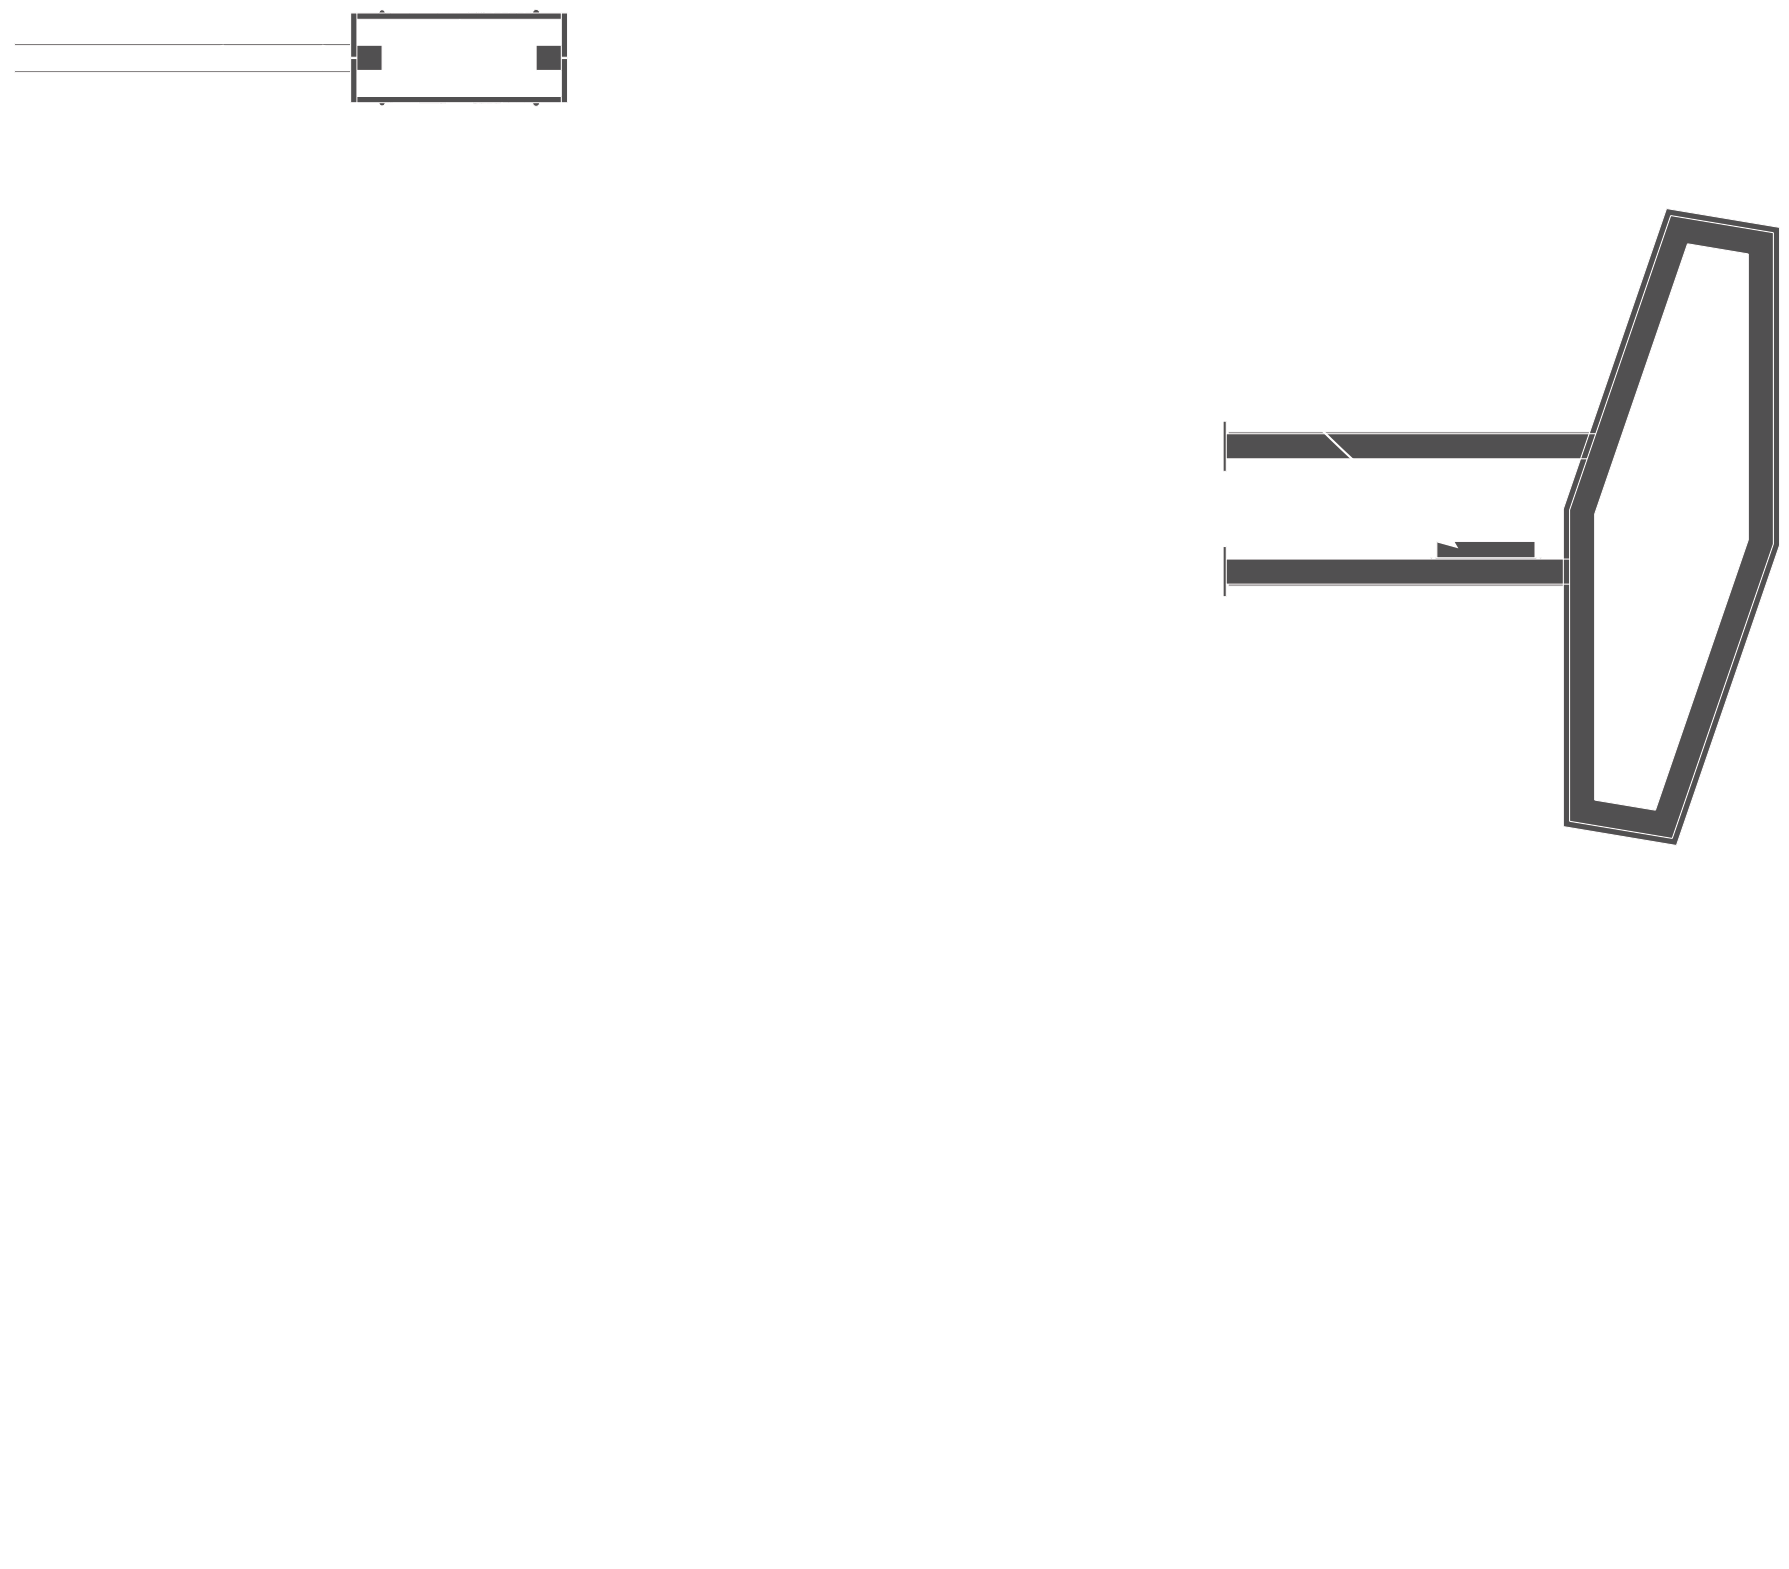 Plan-et-grille-tarifaire-Carotte-de-tabac-simple-led